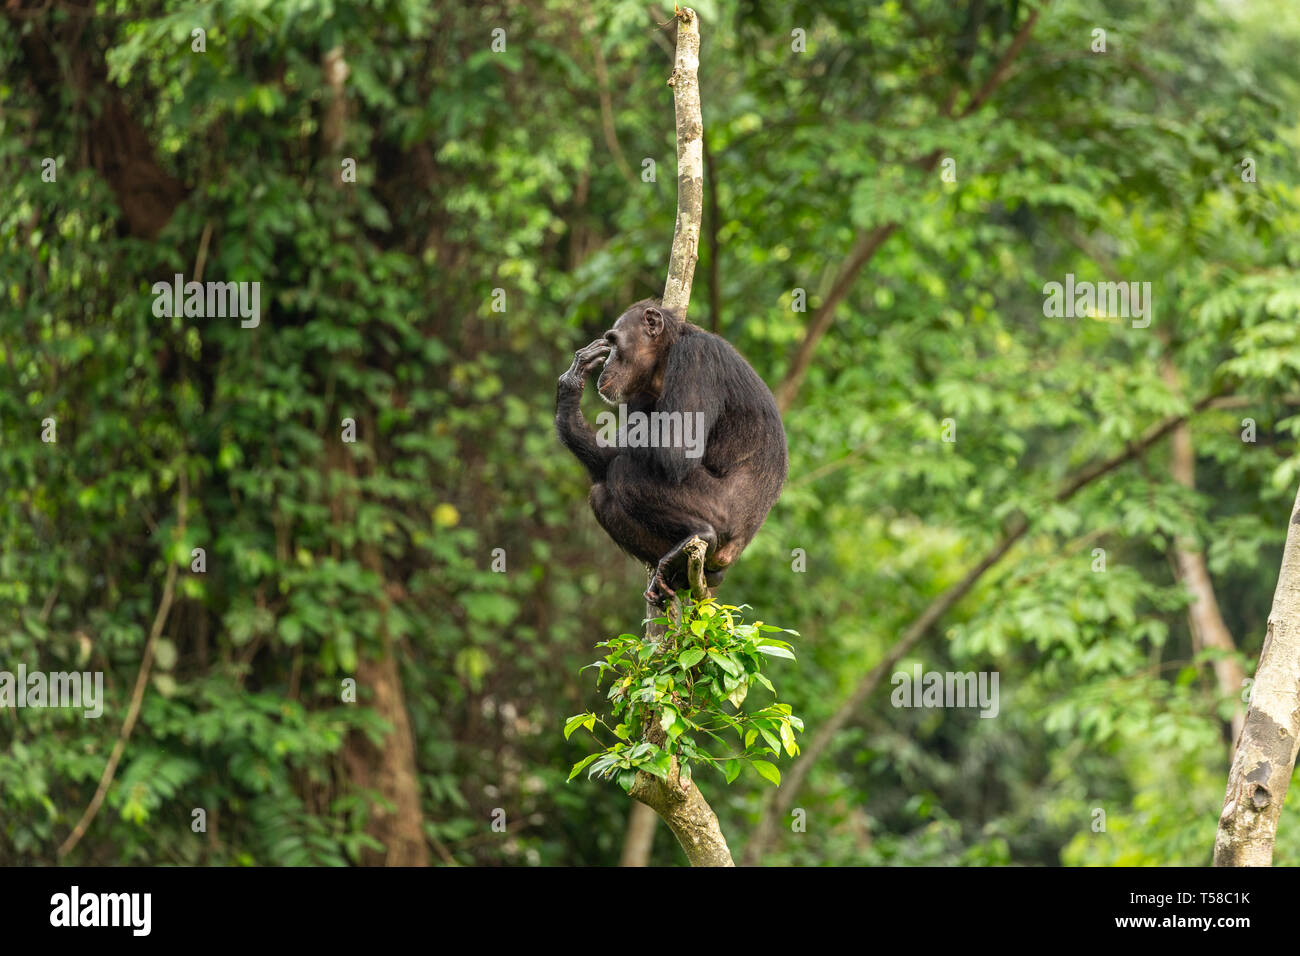 Nigeria-Cameroon maschio di uno scimpanzé in una struttura ad albero nella giungla Buanchor, Afi montagna, Nigeria meridionale Foto Stock